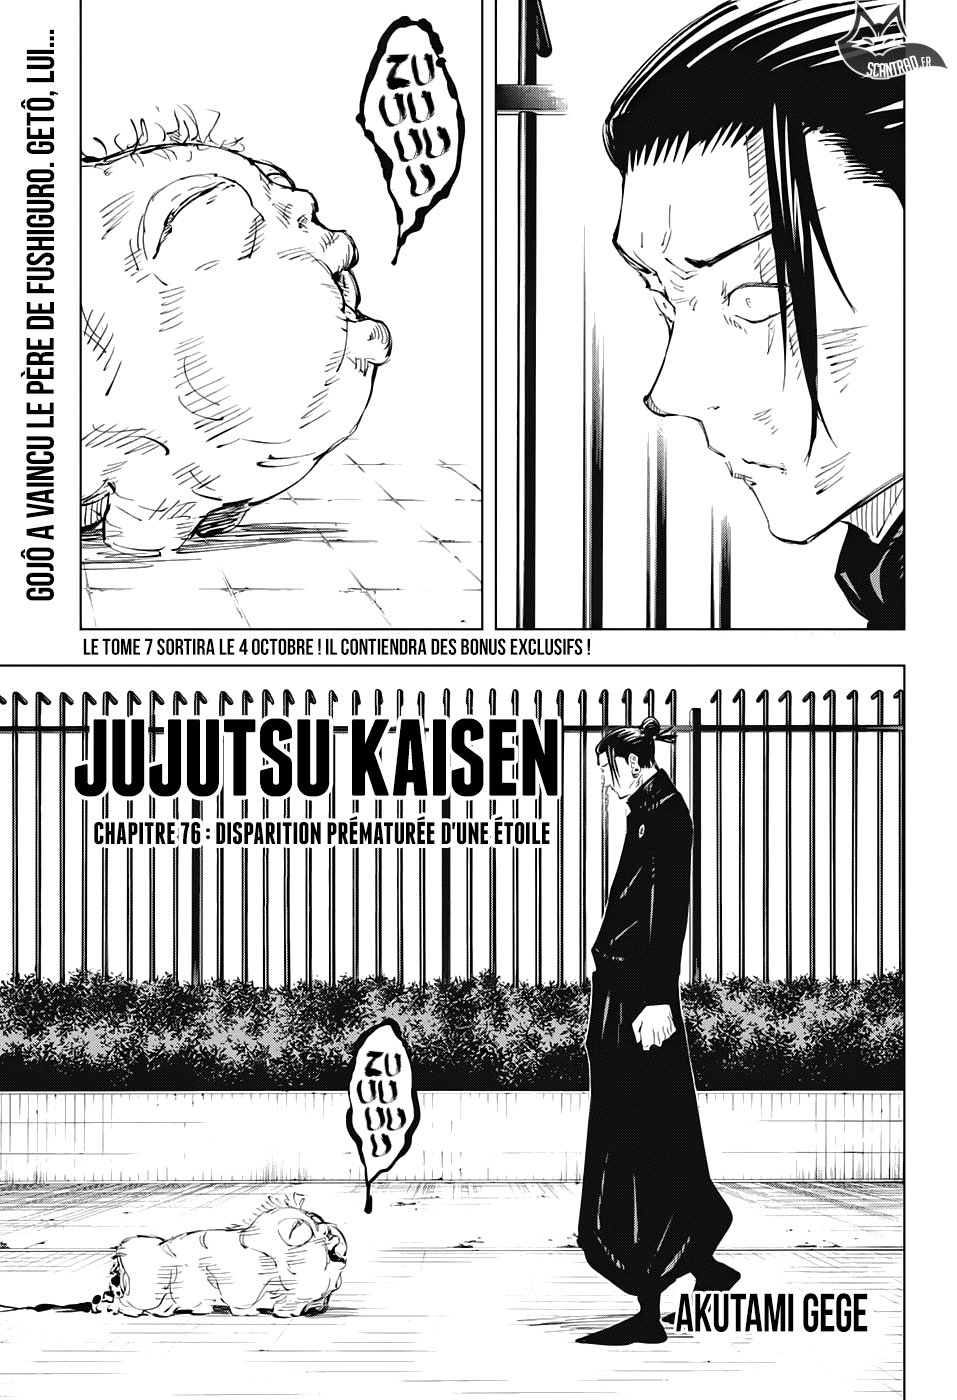 Jujutsu Kaisen: Chapter chapitre-76 - Page 1